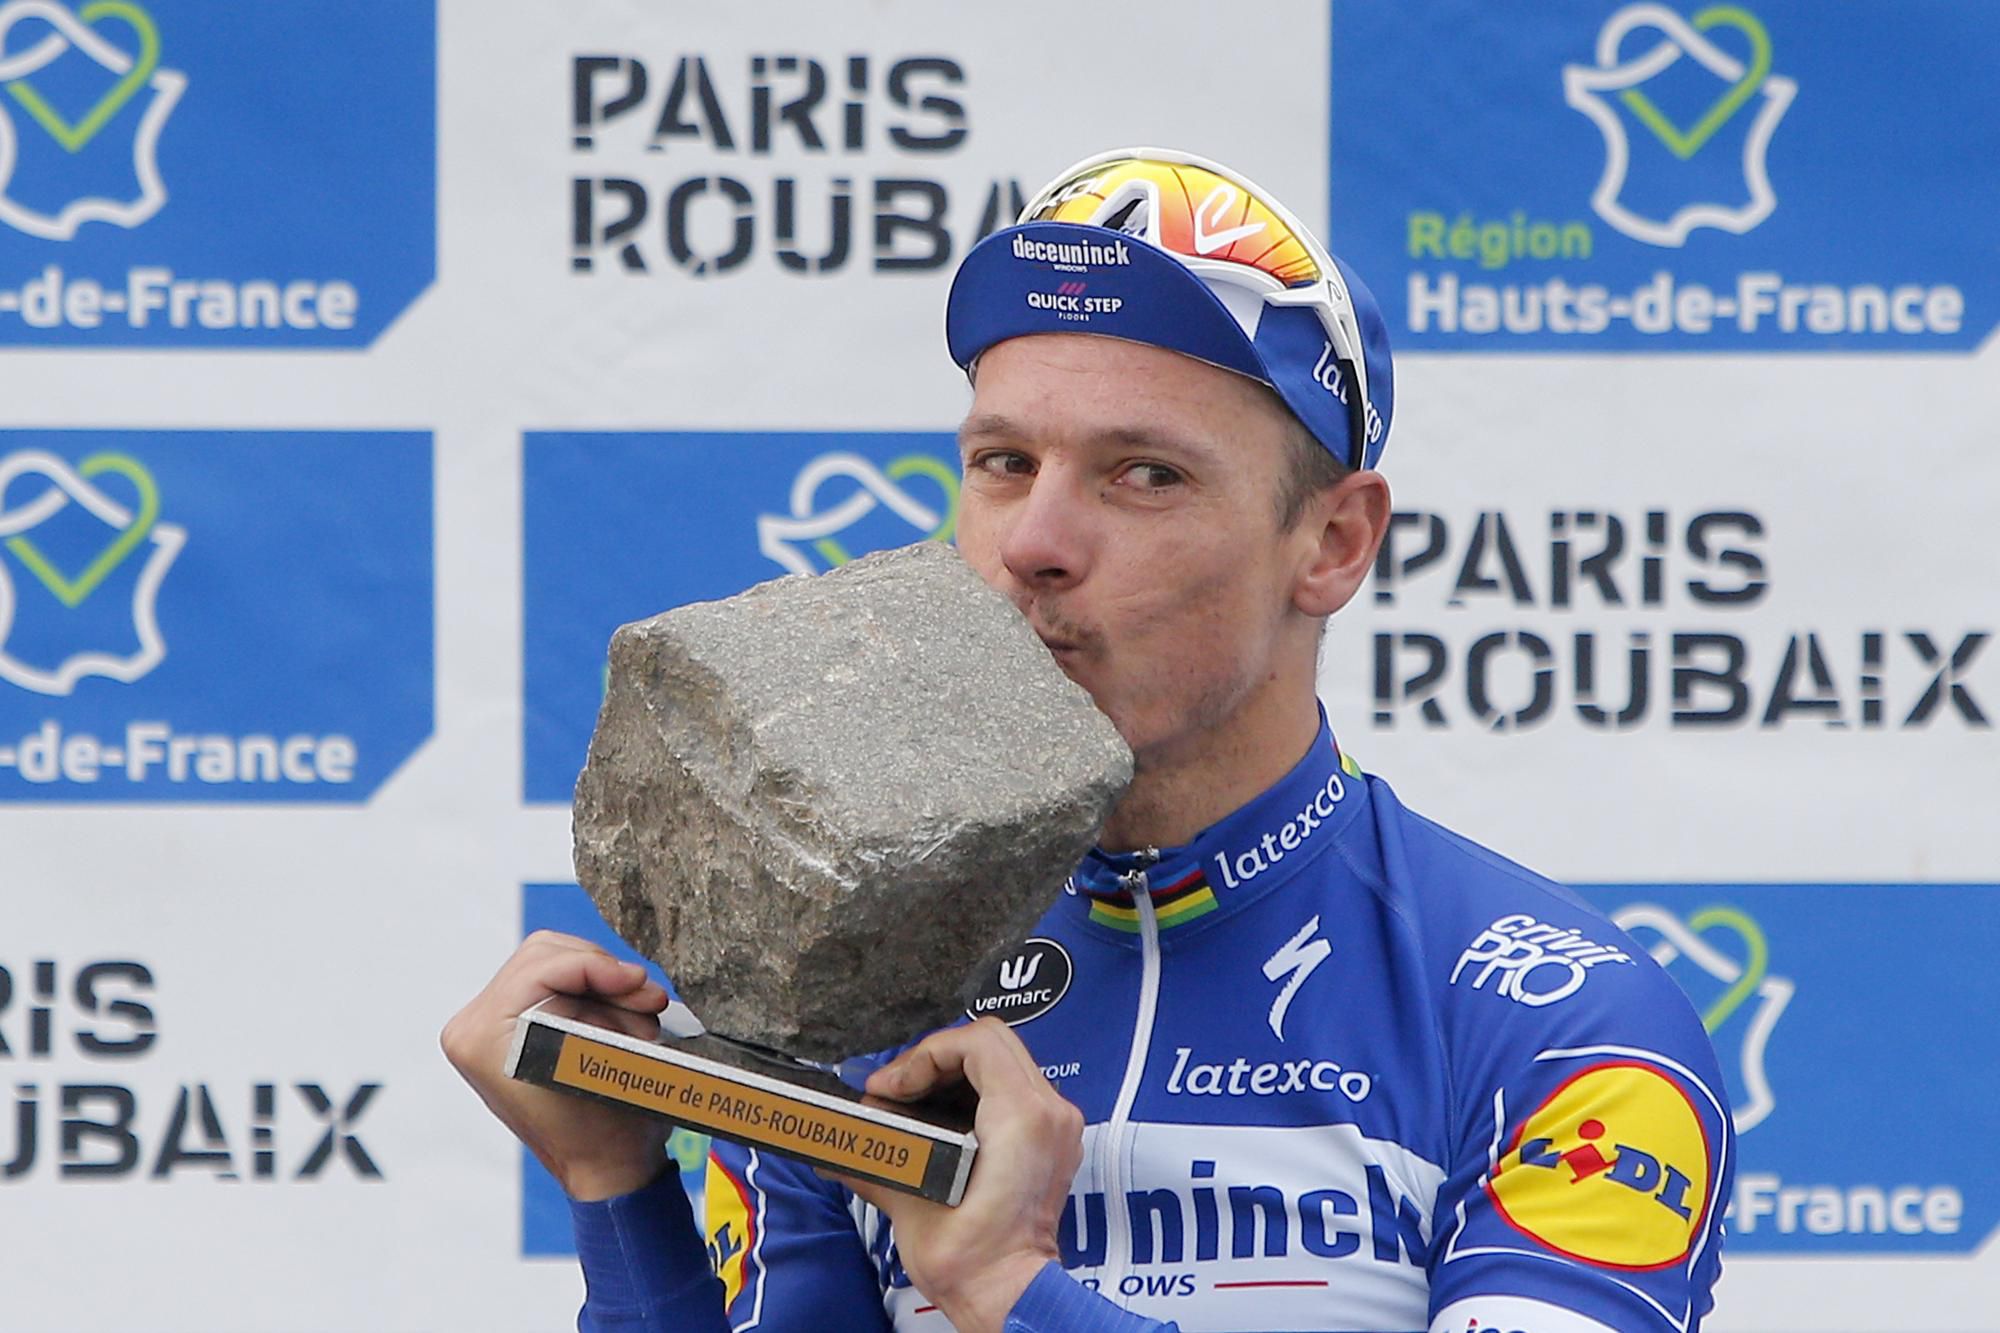 Belgičan Philippe Gilbert z tímu Quick Step sa teší na pódiu z triumfu na 117. ročníku Paríž - Roubaix.